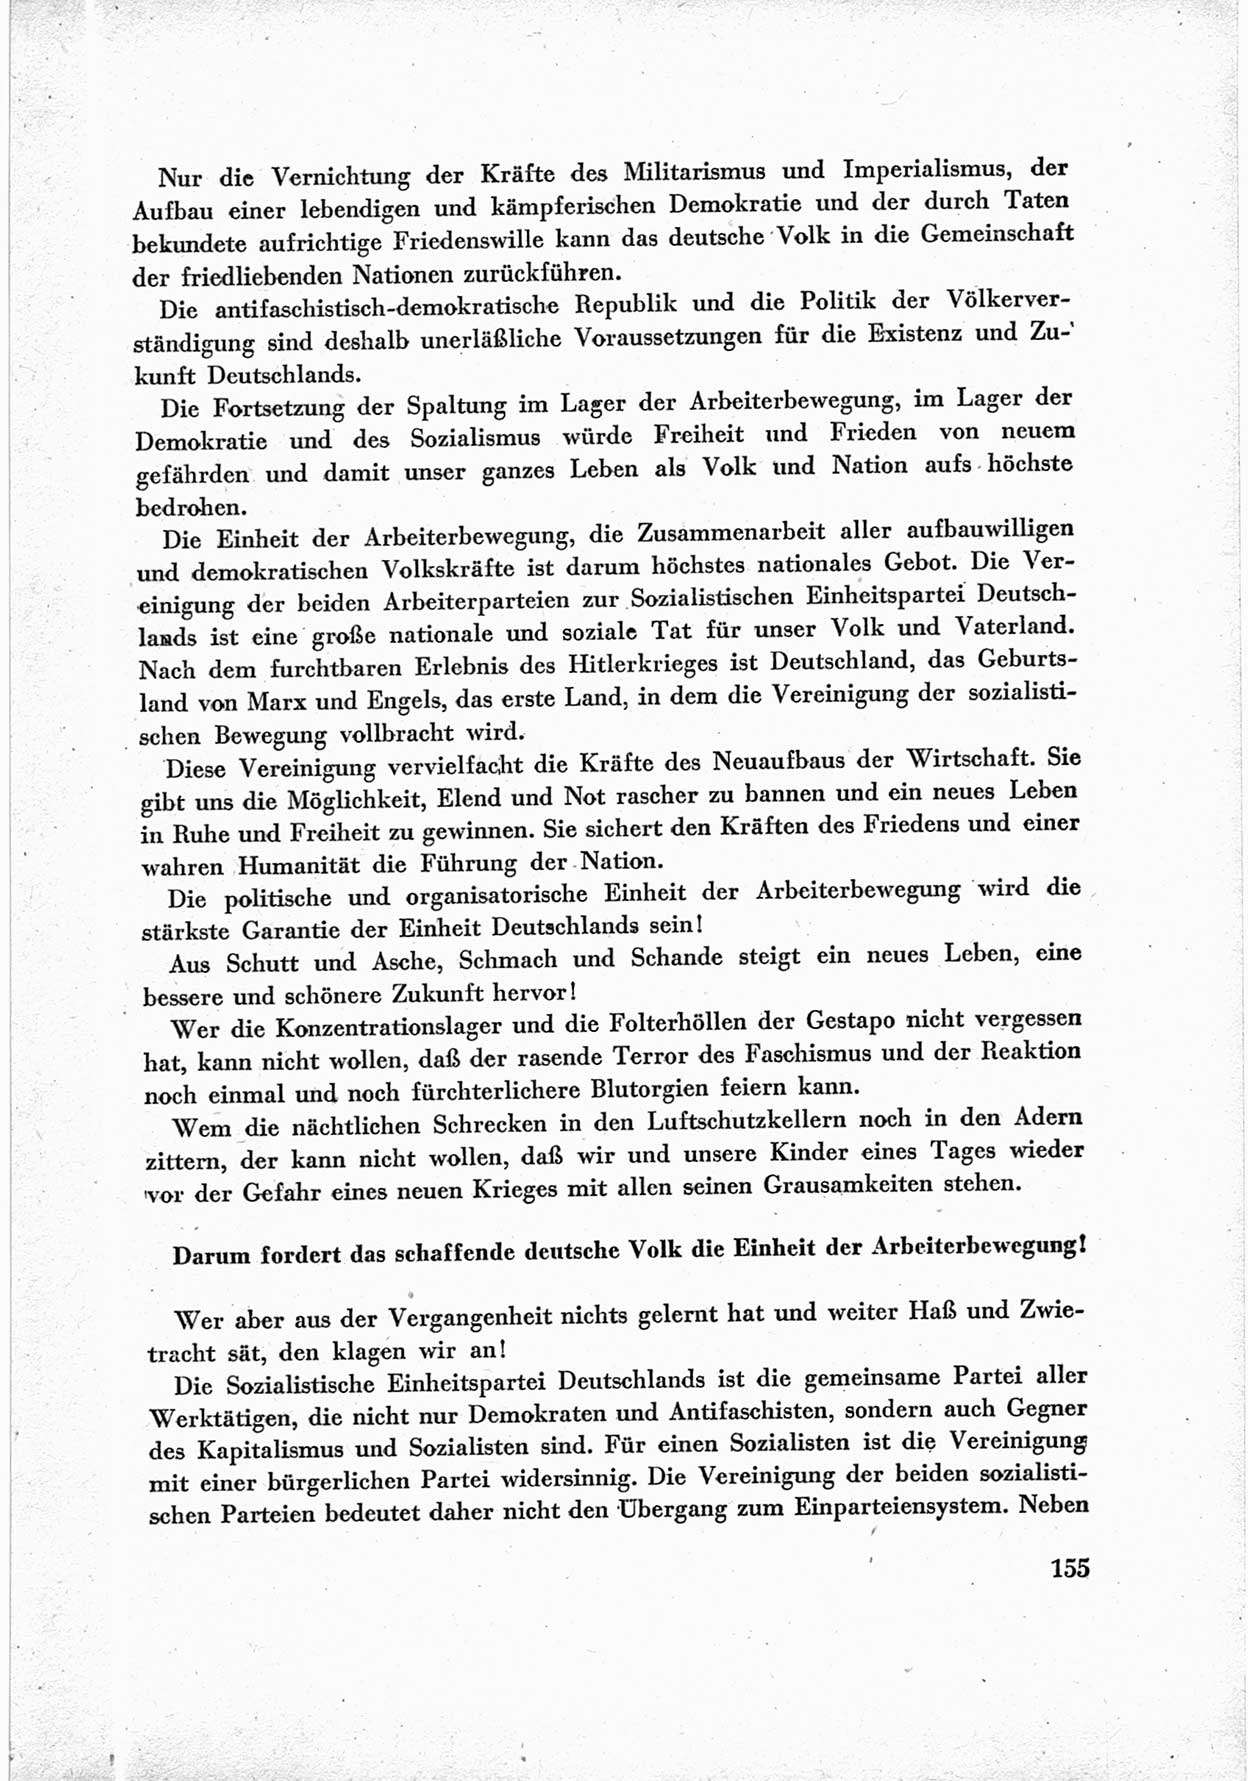 40. Parteitag der Sozialdemokratischen Partei Deutschlands (SPD) [Sowjetische Besatzungszone (SBZ) Deutschlands] am 19. und 20. April 1946 in Berlin, Seite 155 (40. PT SPD SBZ Dtl. 1946, S. 155)